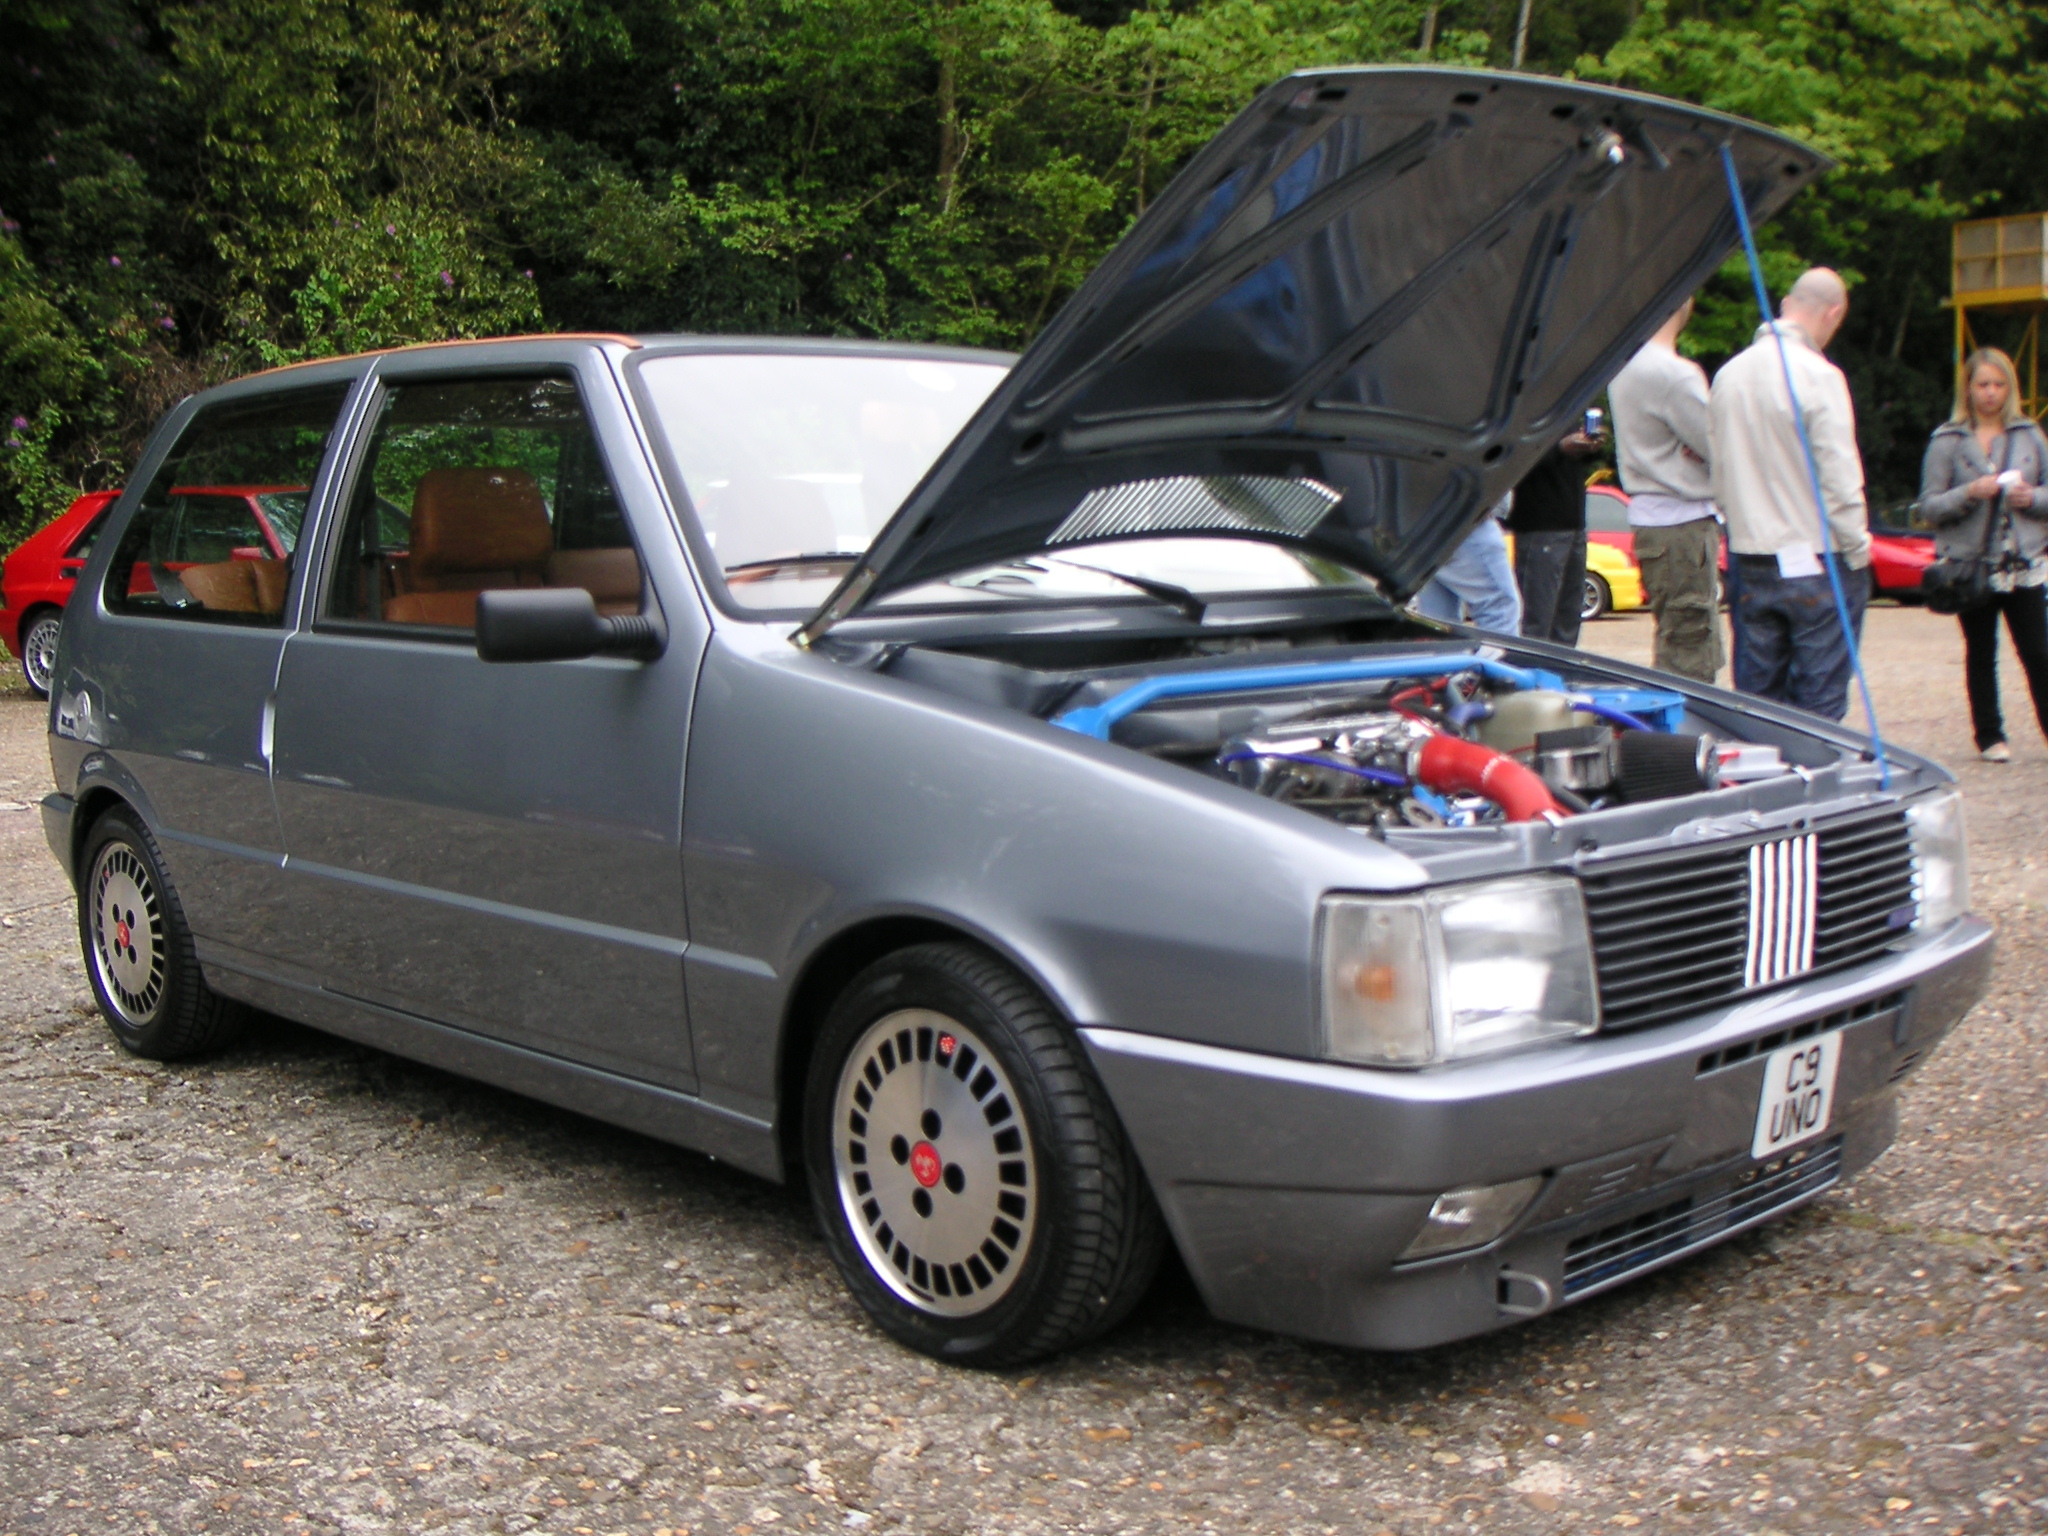 1988 MK1 Fiat Uno Turbo i.e. & 1990 MK1 Fiat Uno Turbo i.e.